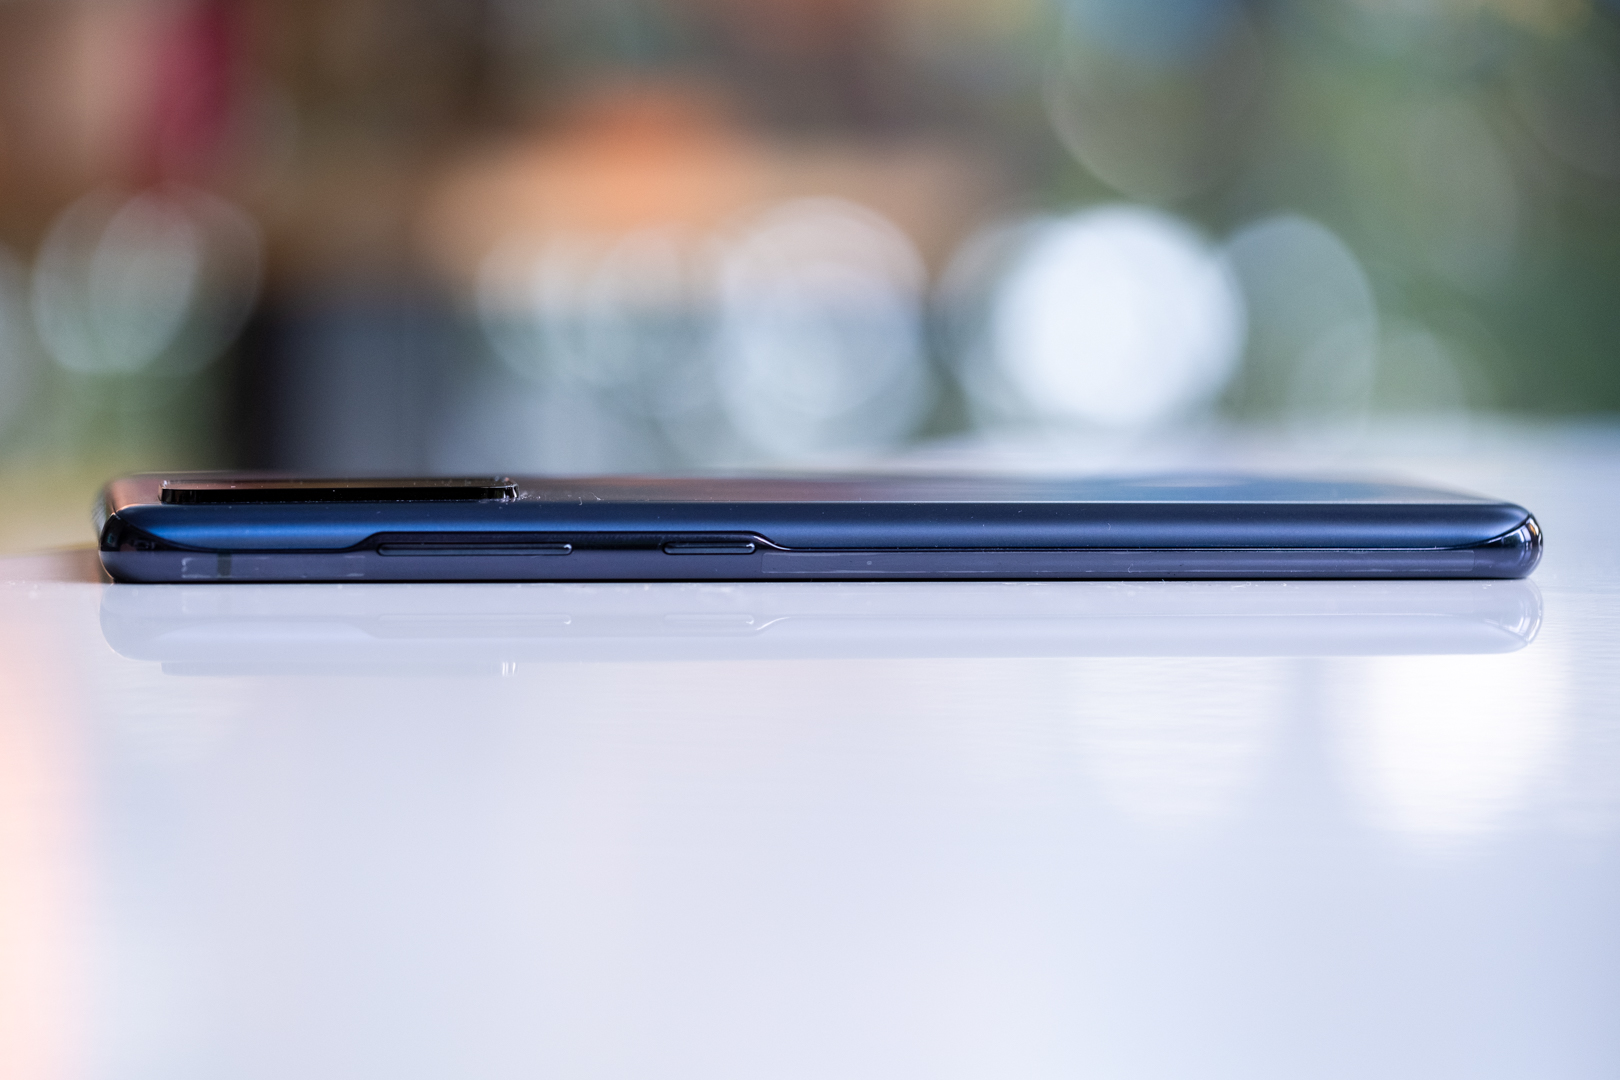 Samsung Galaxy S20 FE side profile